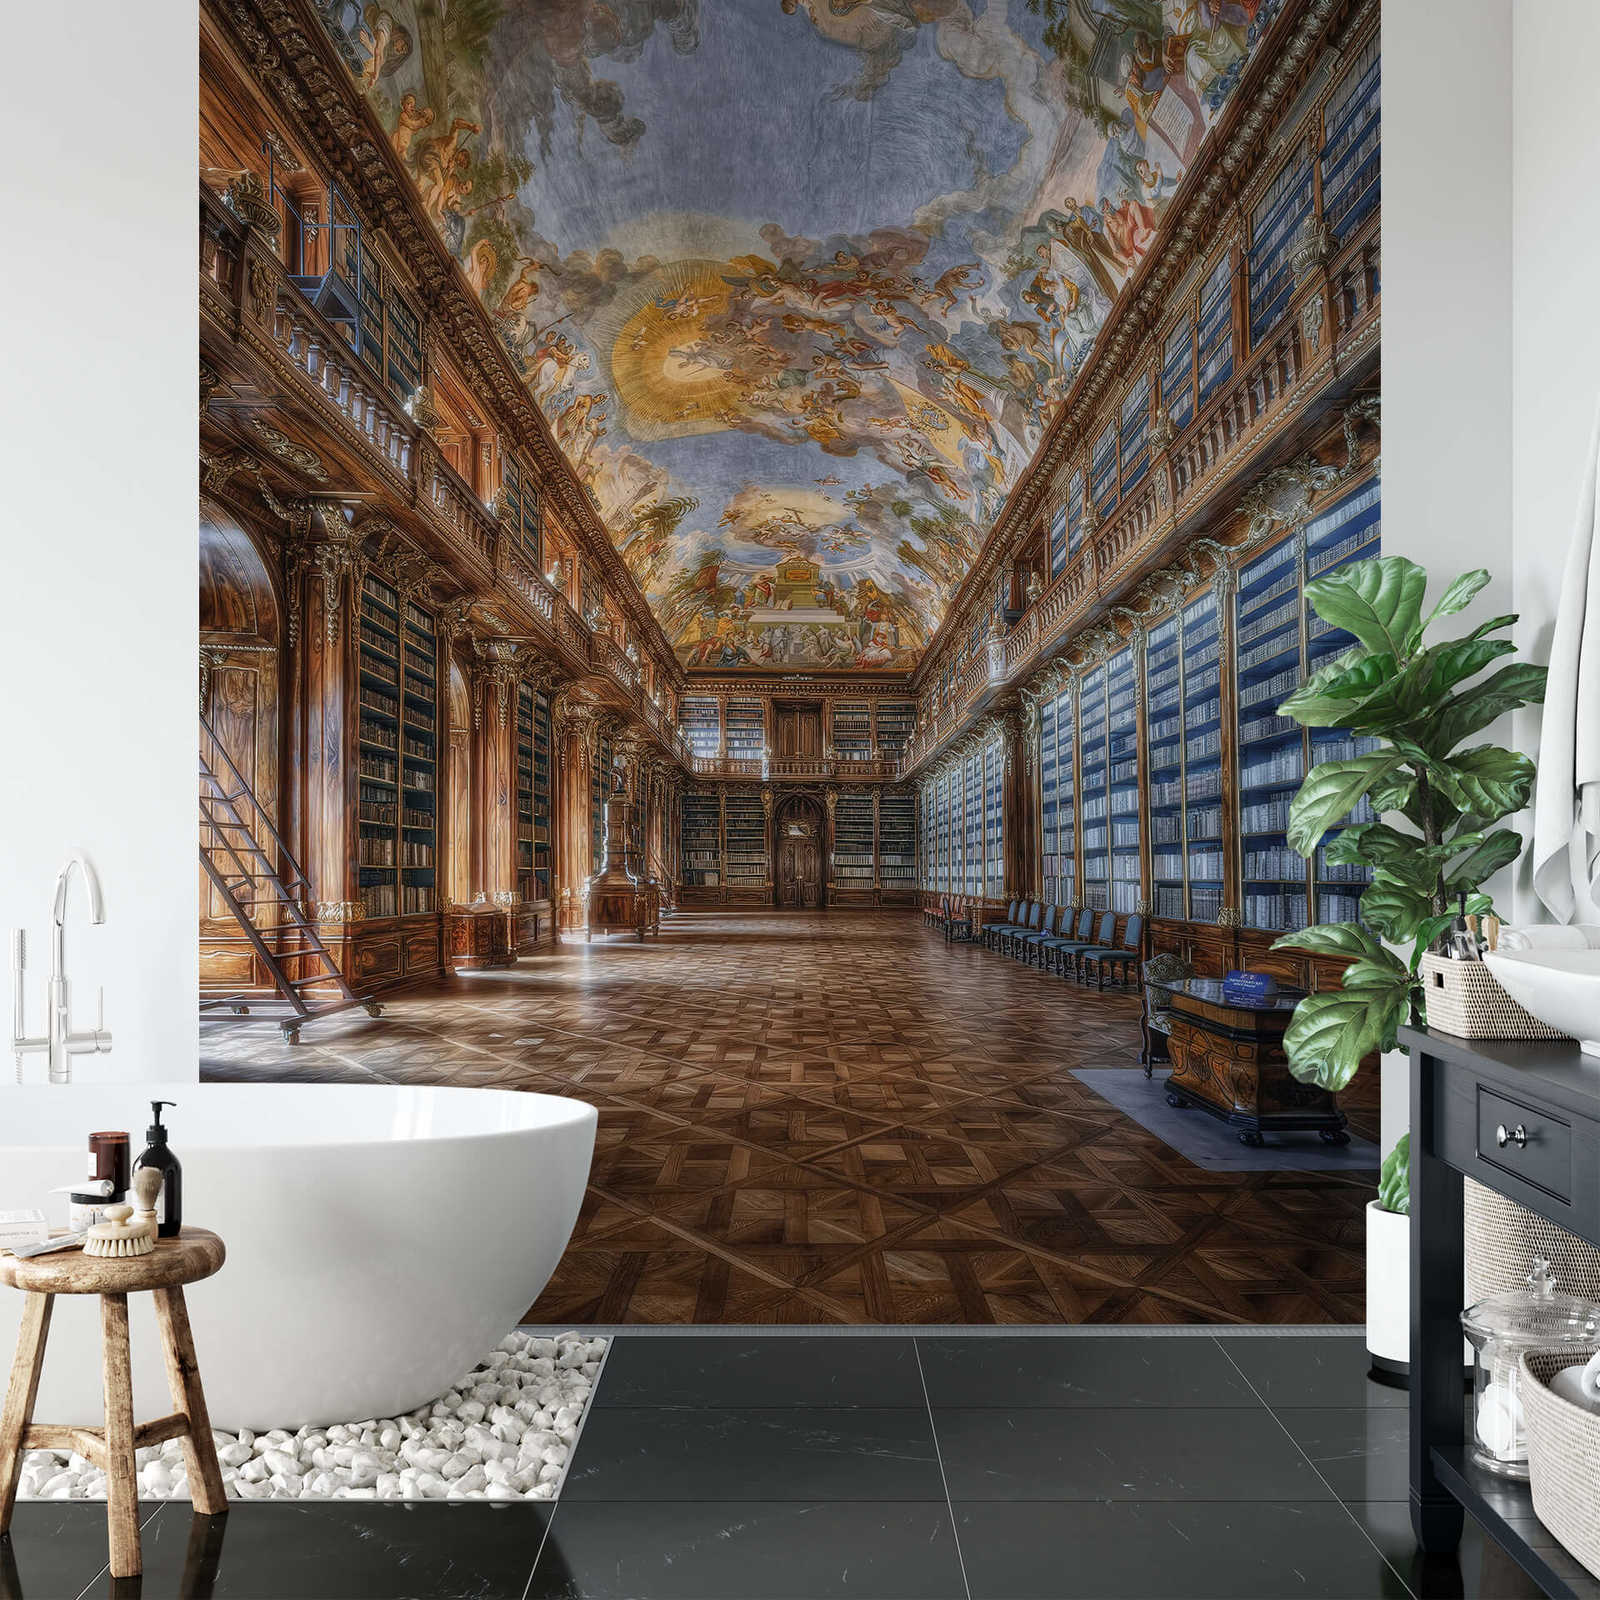             Muurschildering Bibliotheek Renaissance Architectuur
        